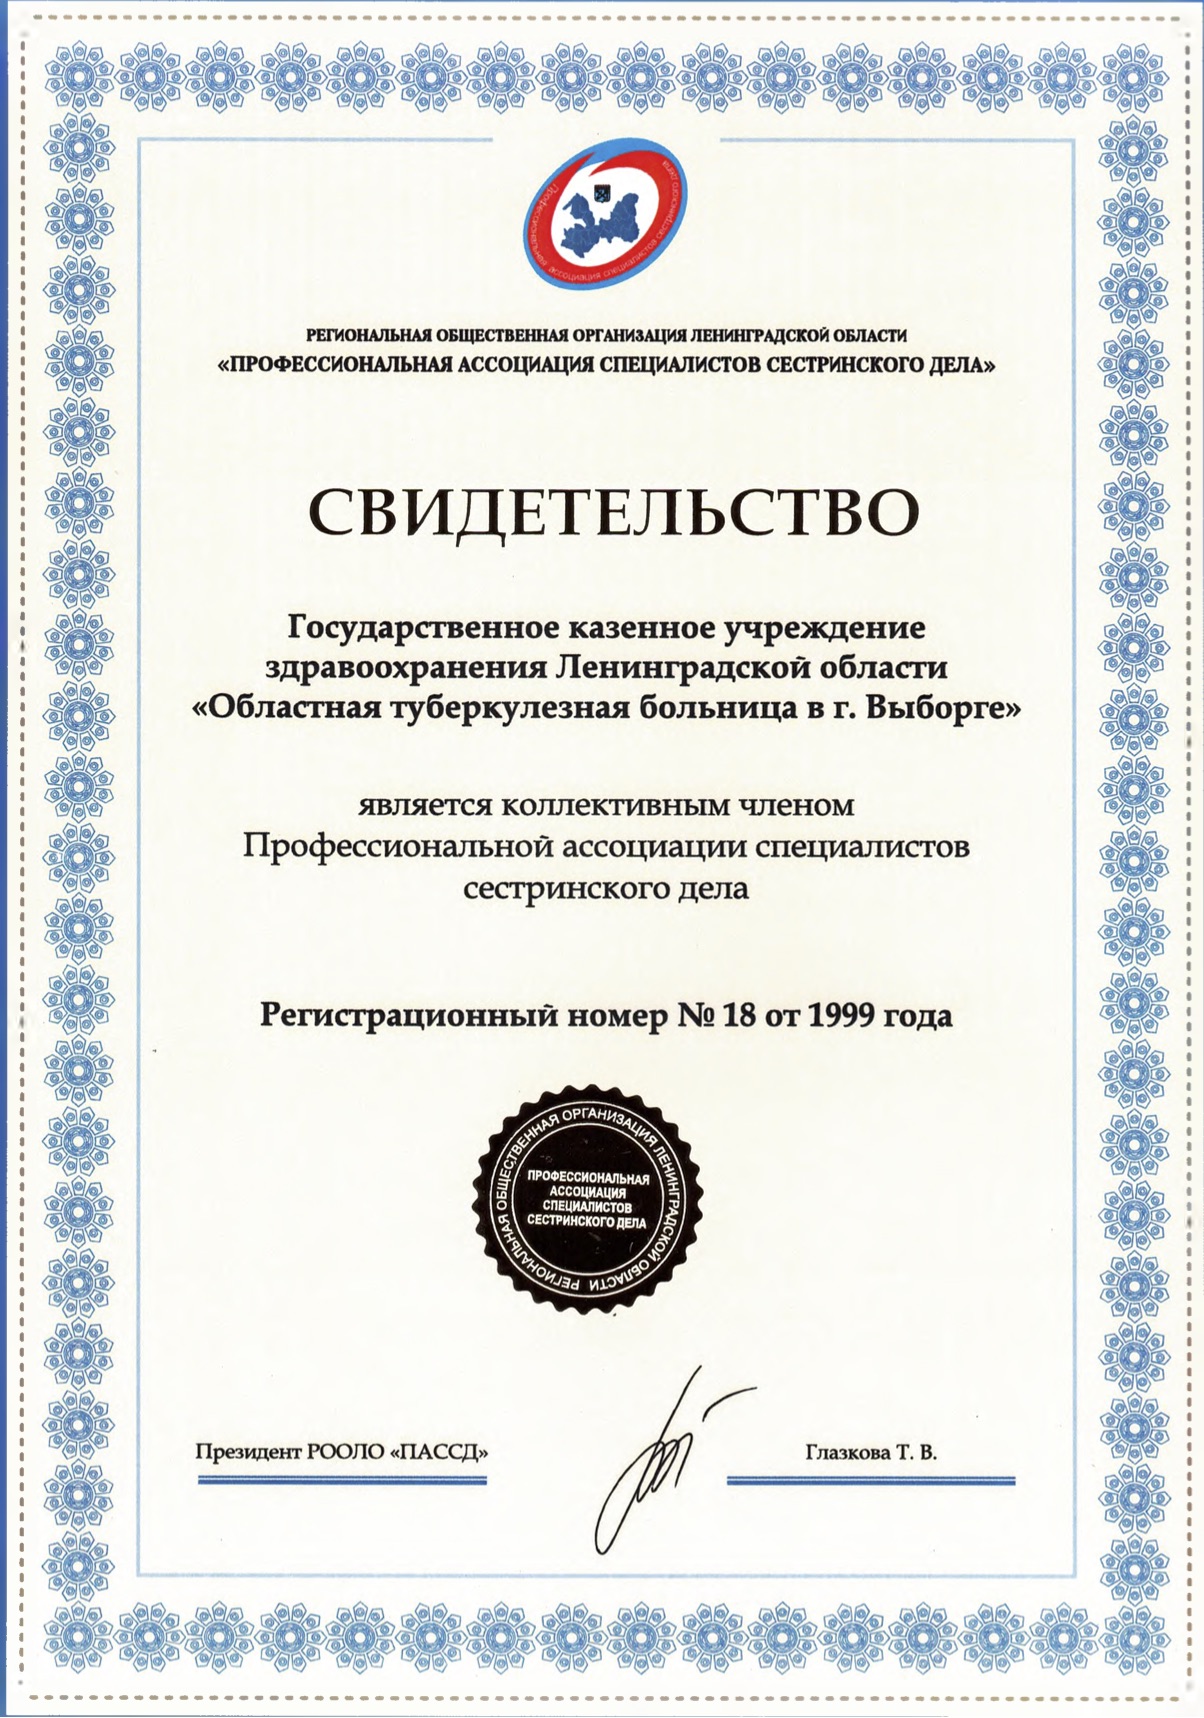 ГКУЗ ЛО "Областная туберкулезная больница в городе Выборге": сертификат